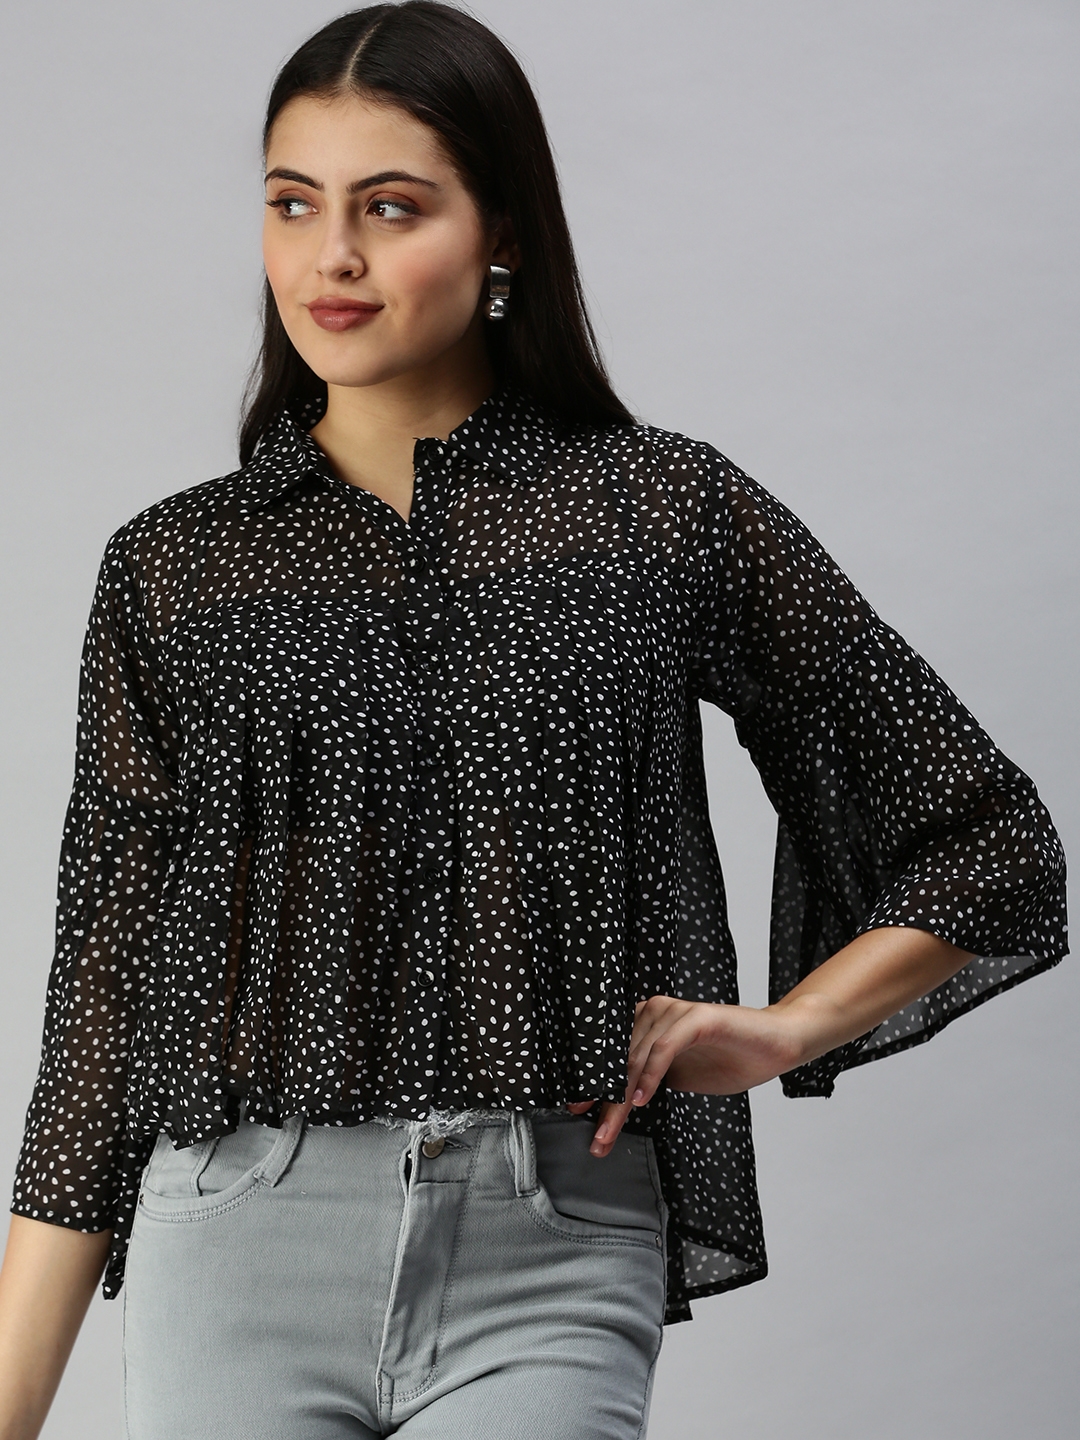 Showoff | SHOWOFF Women's Three-Quarter Sleeves Shirt Collar Black Polka Dots Top 1